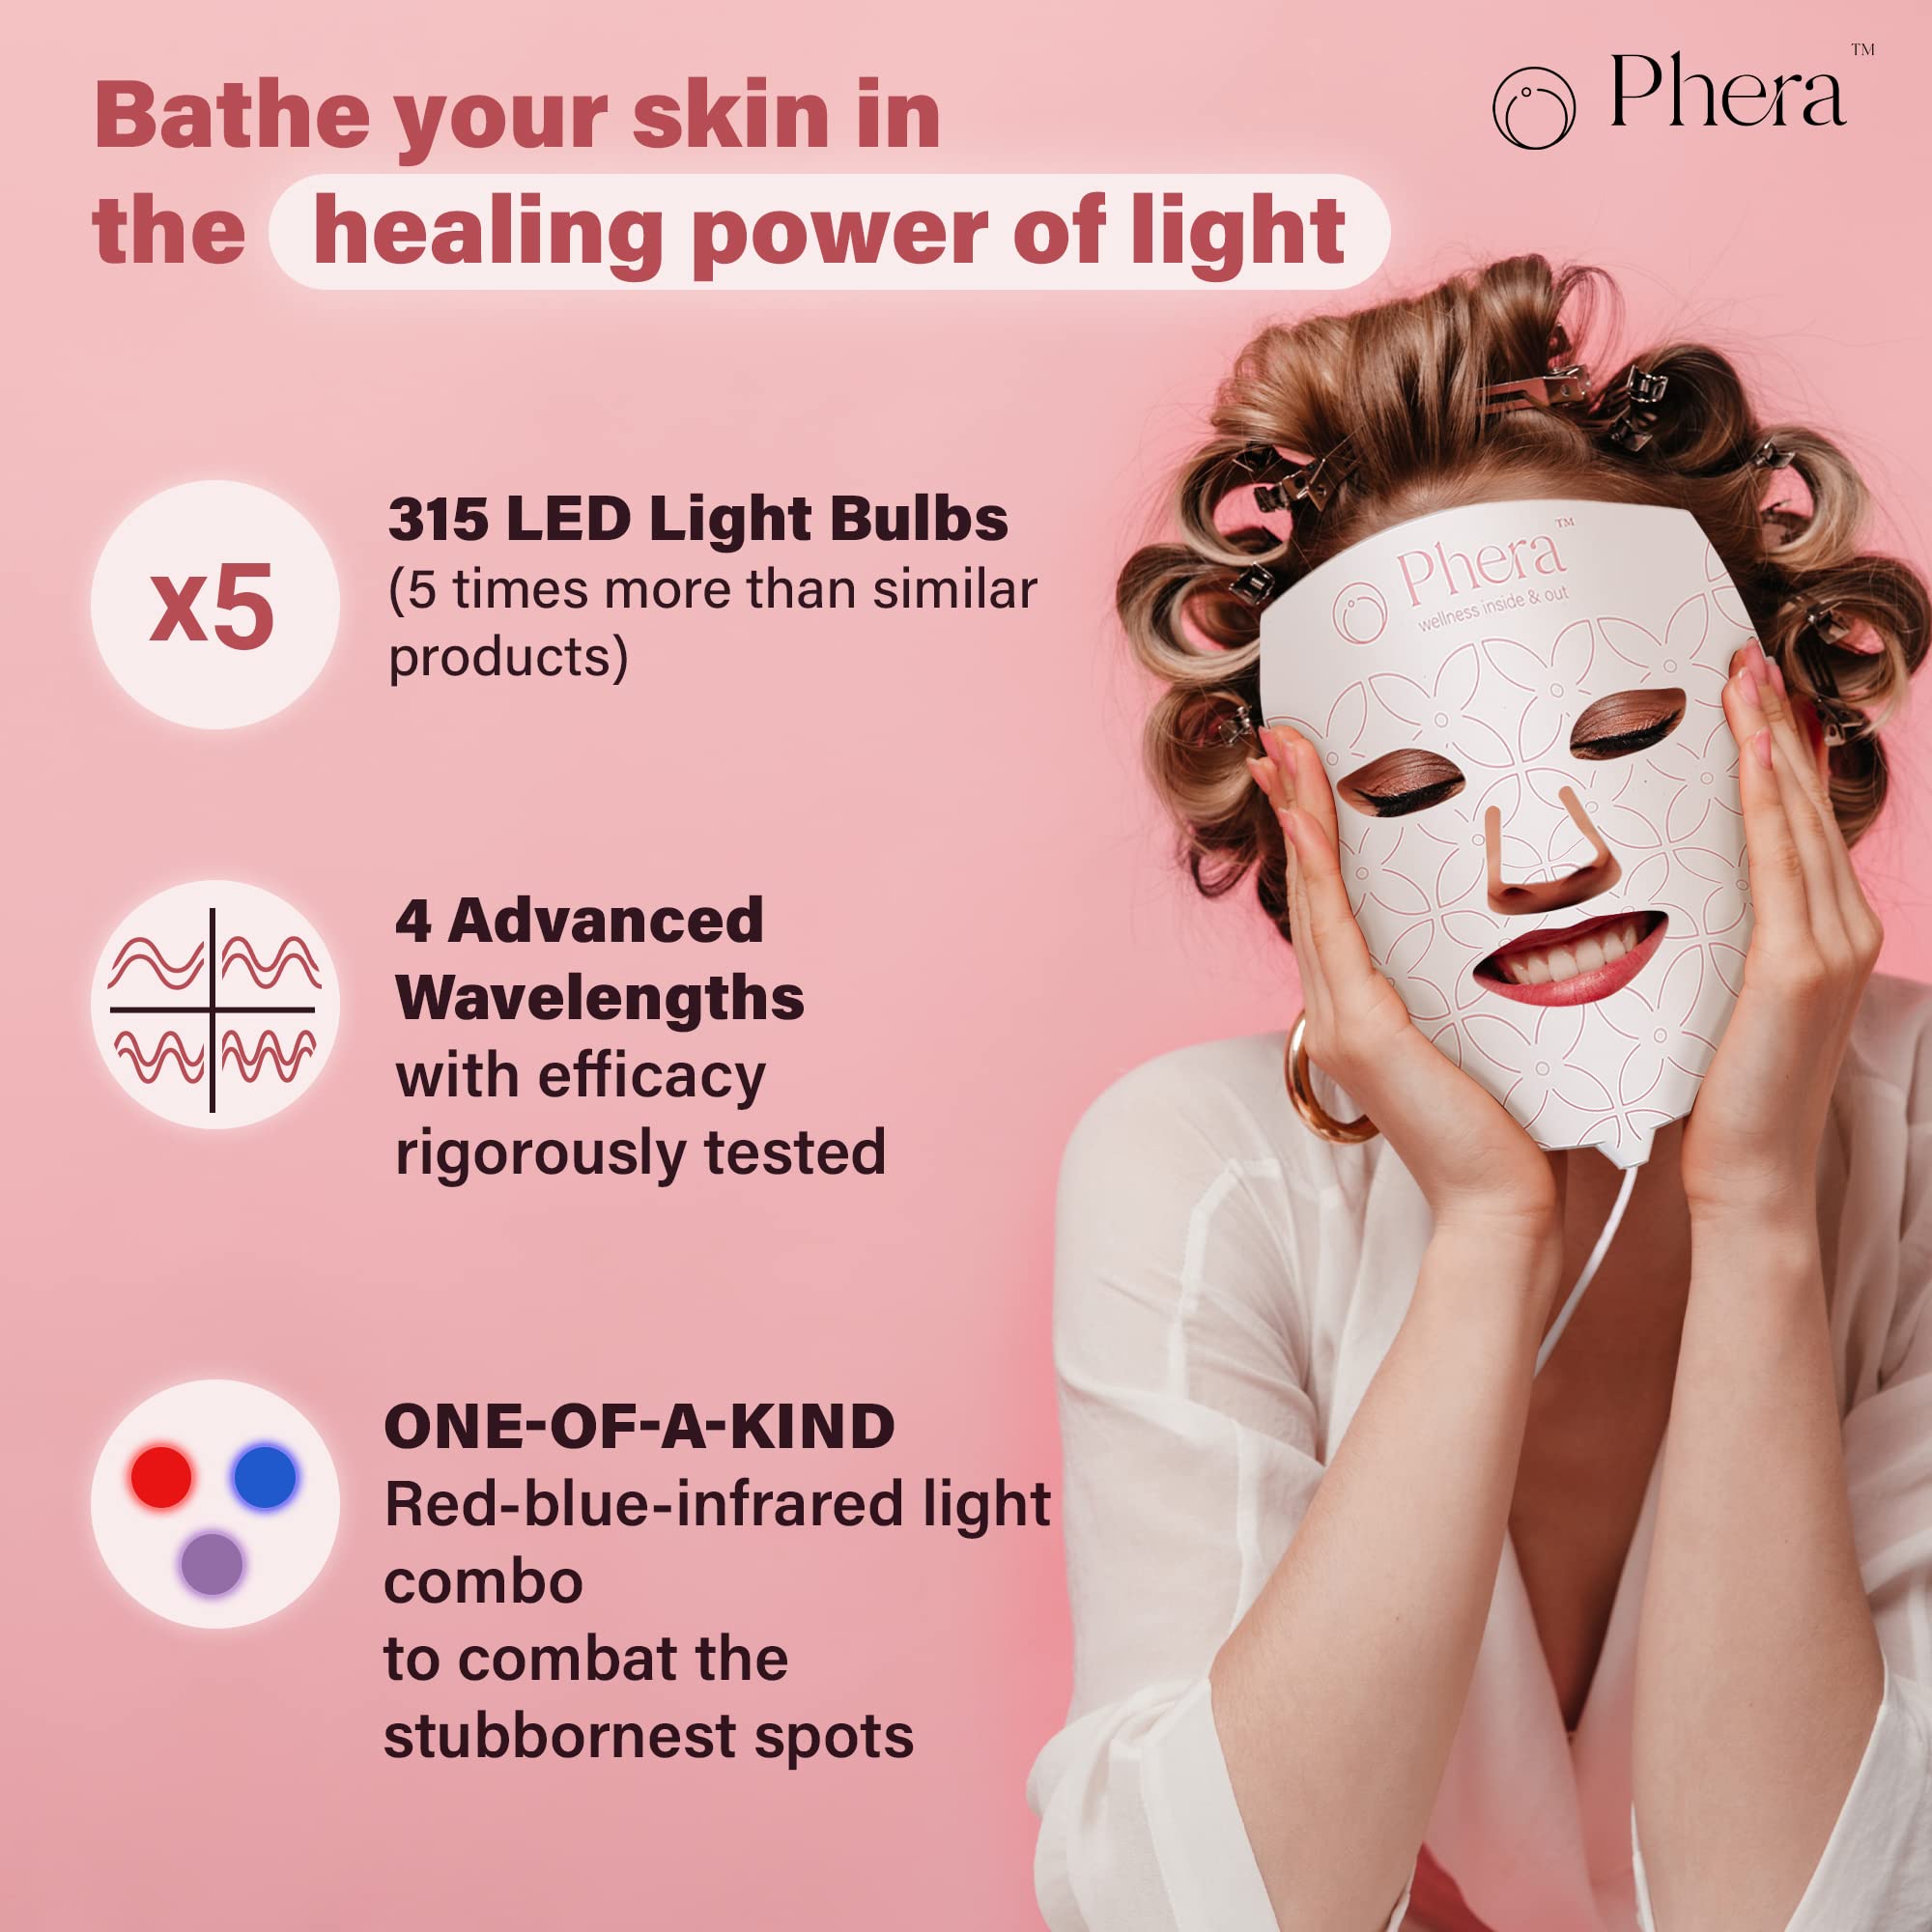 Phera LED Light Therapy Mask - 315 LED Light Bulbs - LED Face Mask Light Therapy - Red Light Therapy Mask - LED Mask - Blue Light Therapy - Infrared Light Therapy for Face - LED Mask Therapy Facial